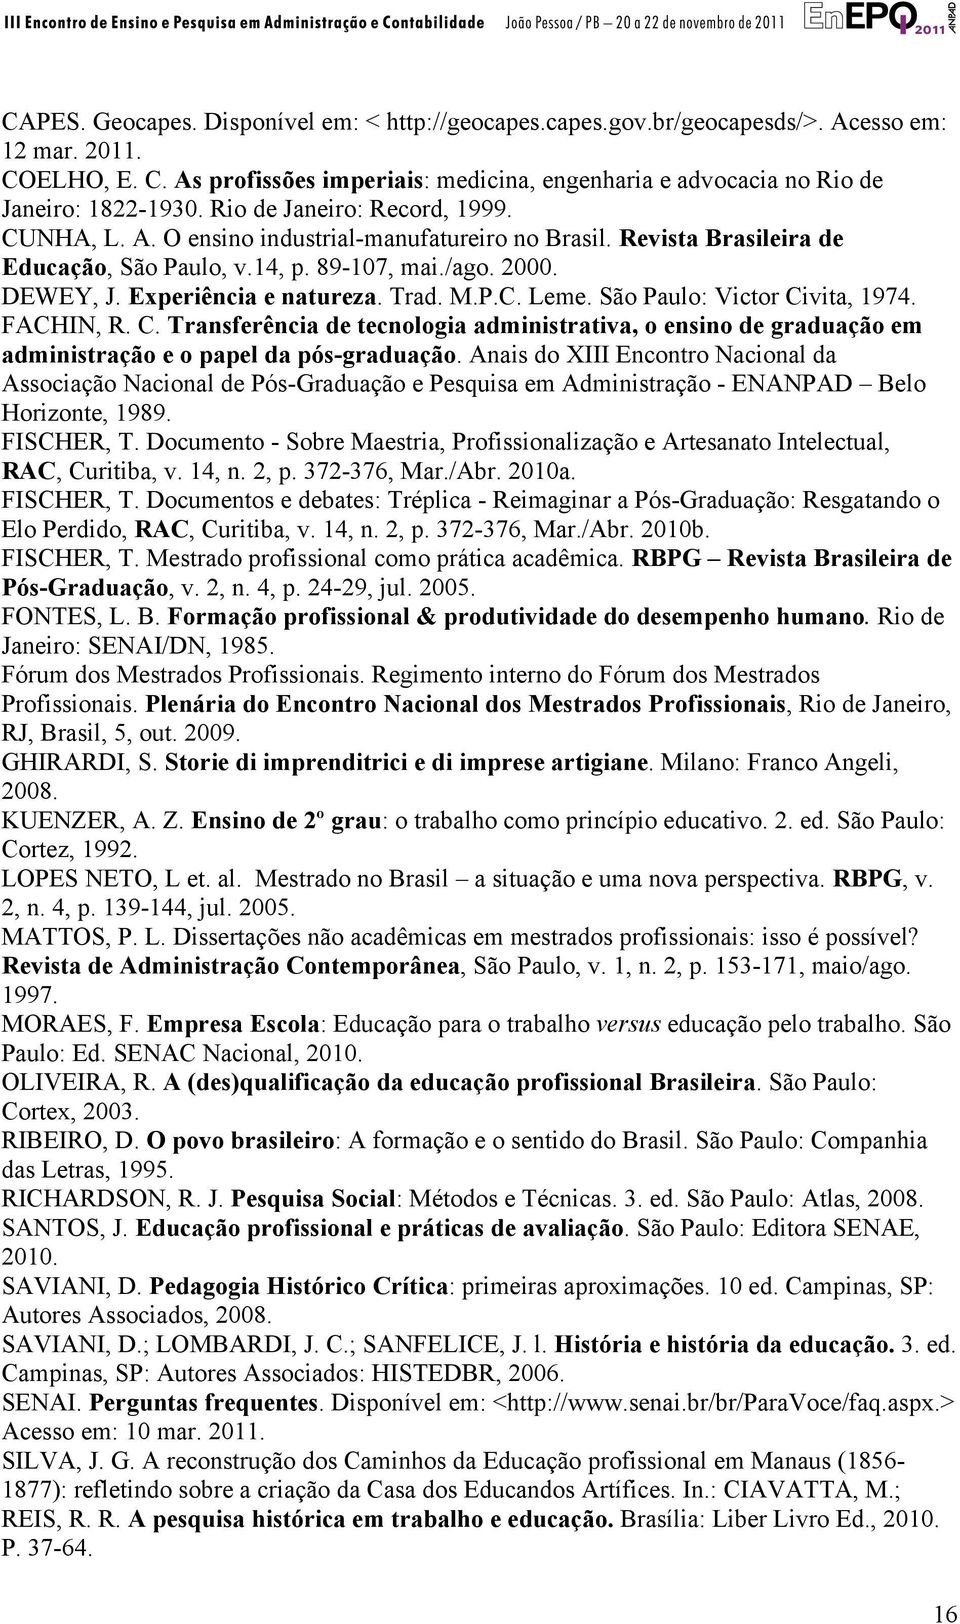 Trad. M.P.C. Leme. São Paulo: Victor Civita, 1974. FACHIN, R. C. Transferência de tecnologia administrativa, o ensino de graduação em administração e o papel da pós-graduação.